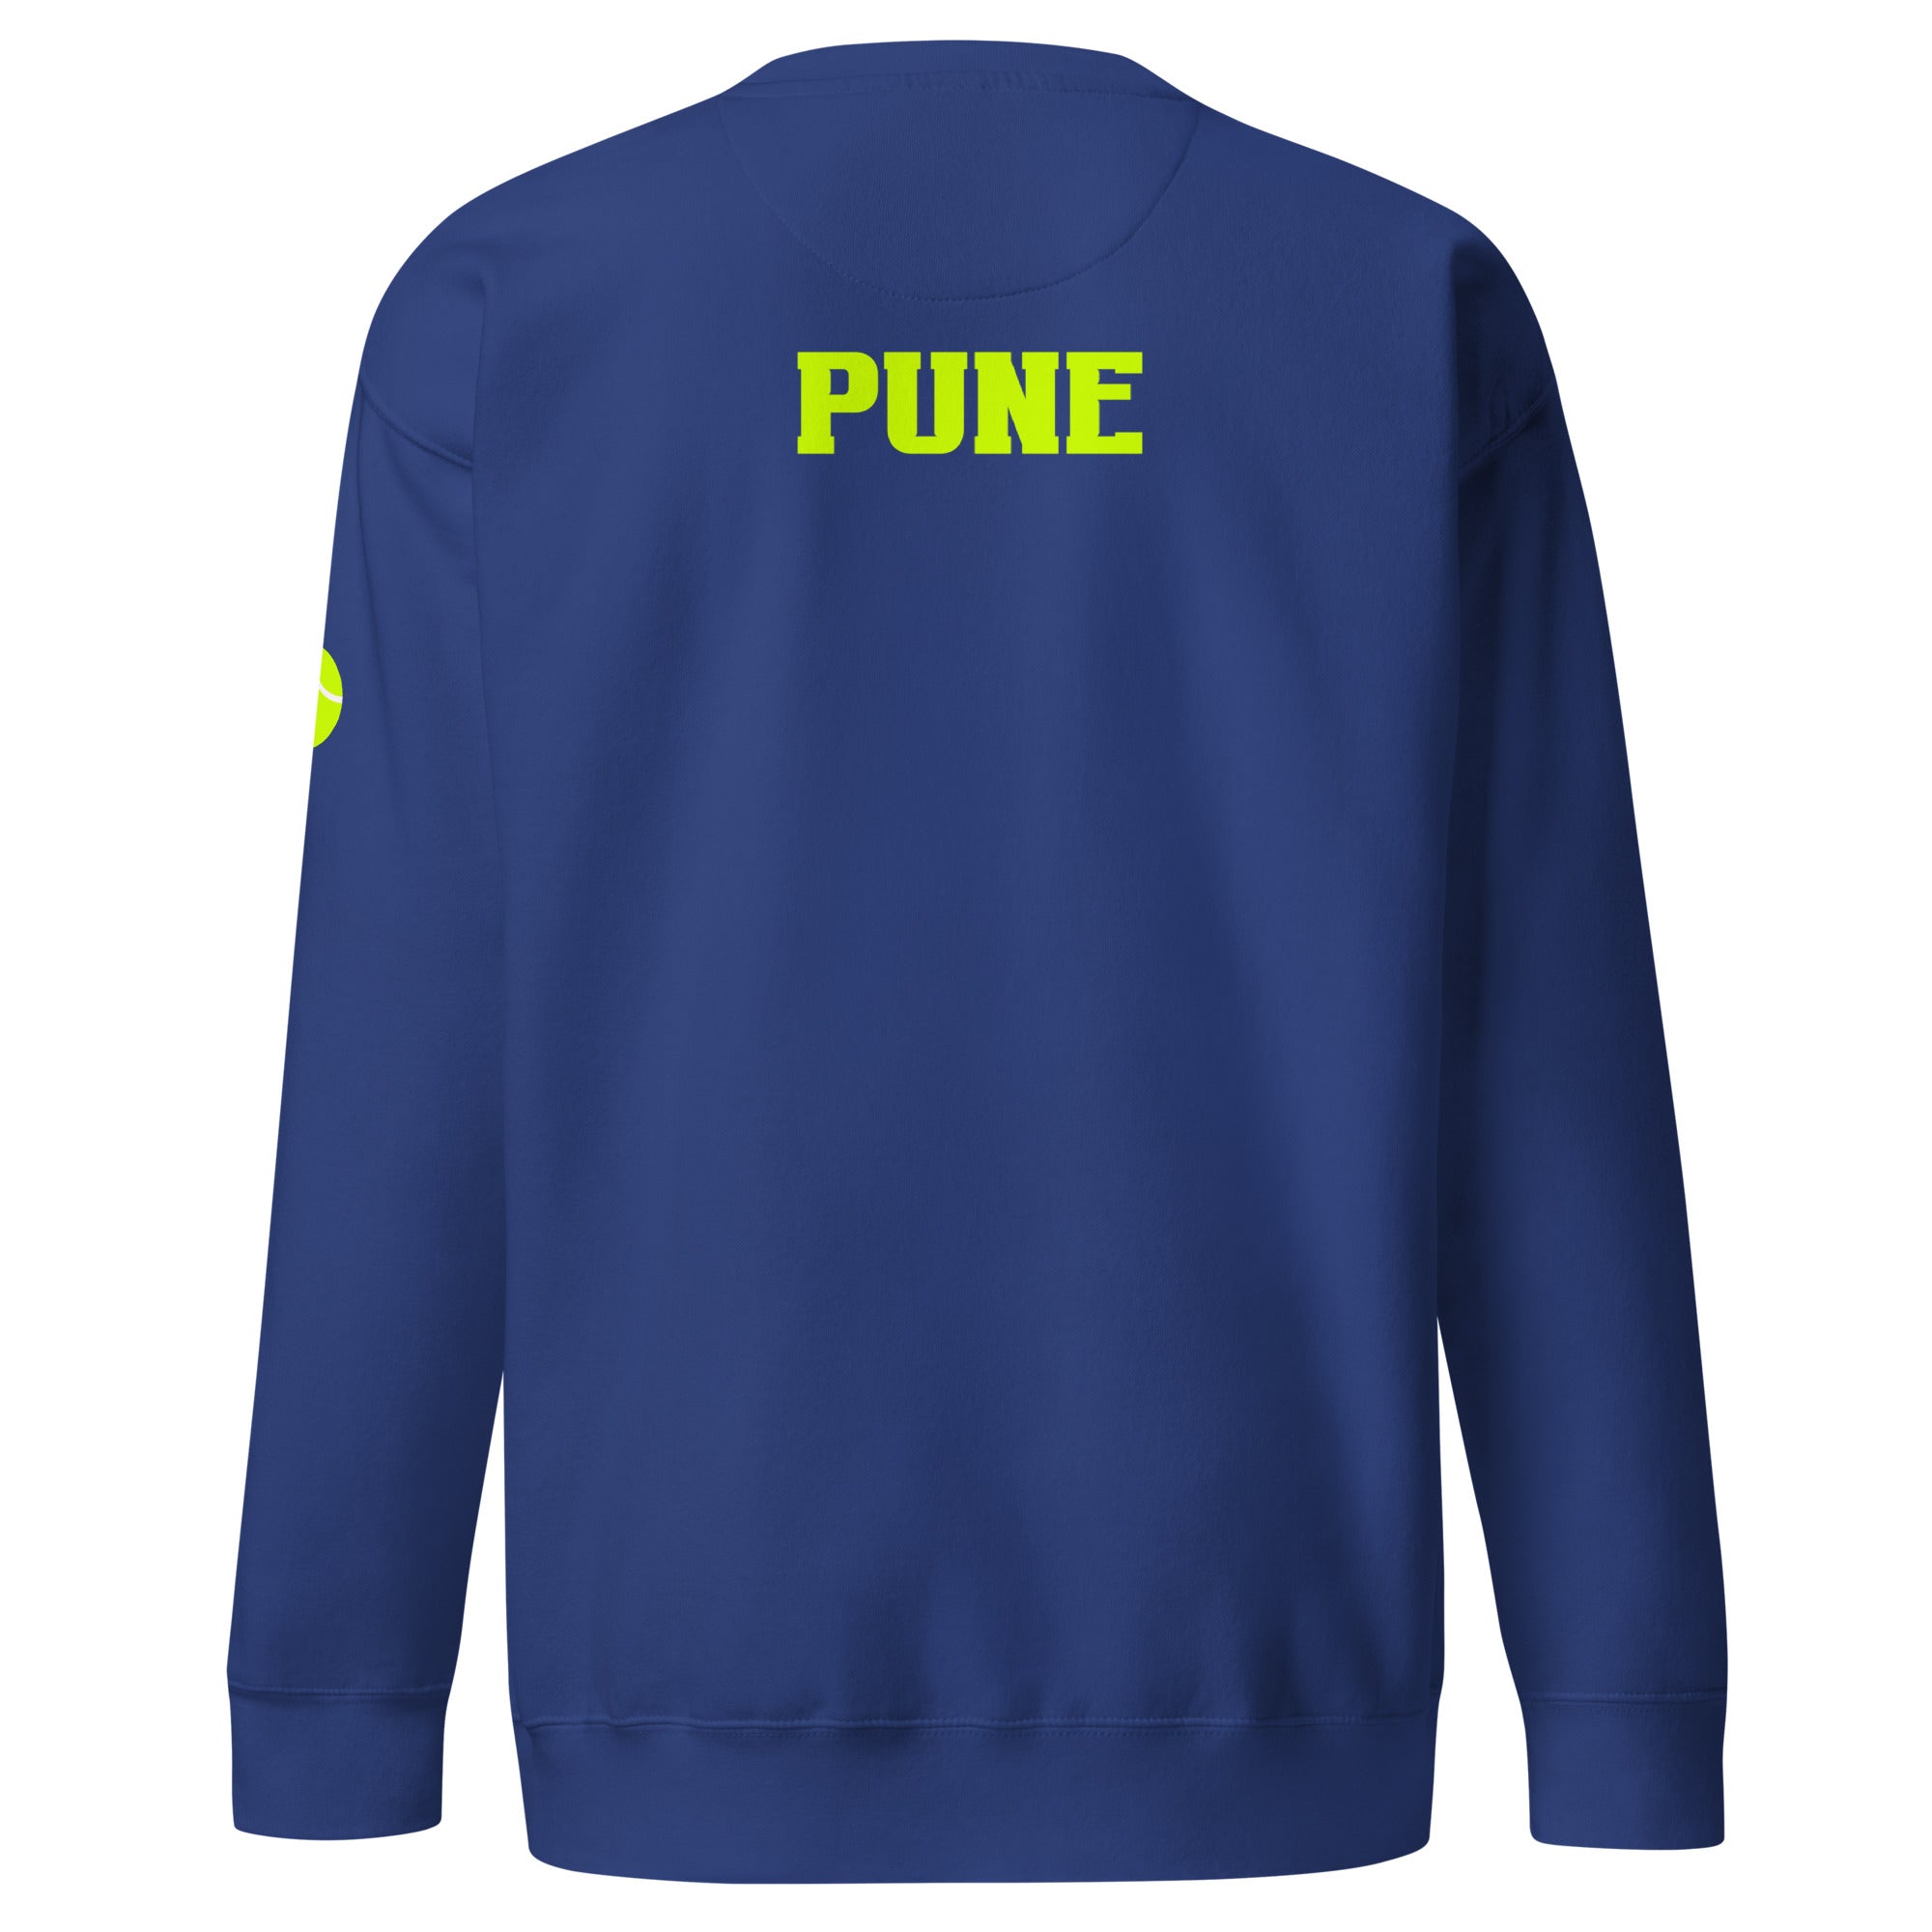 Unisex Premium Sweatshirt - Tennis Masters Pune - GRAPHIC T-SHIRTS